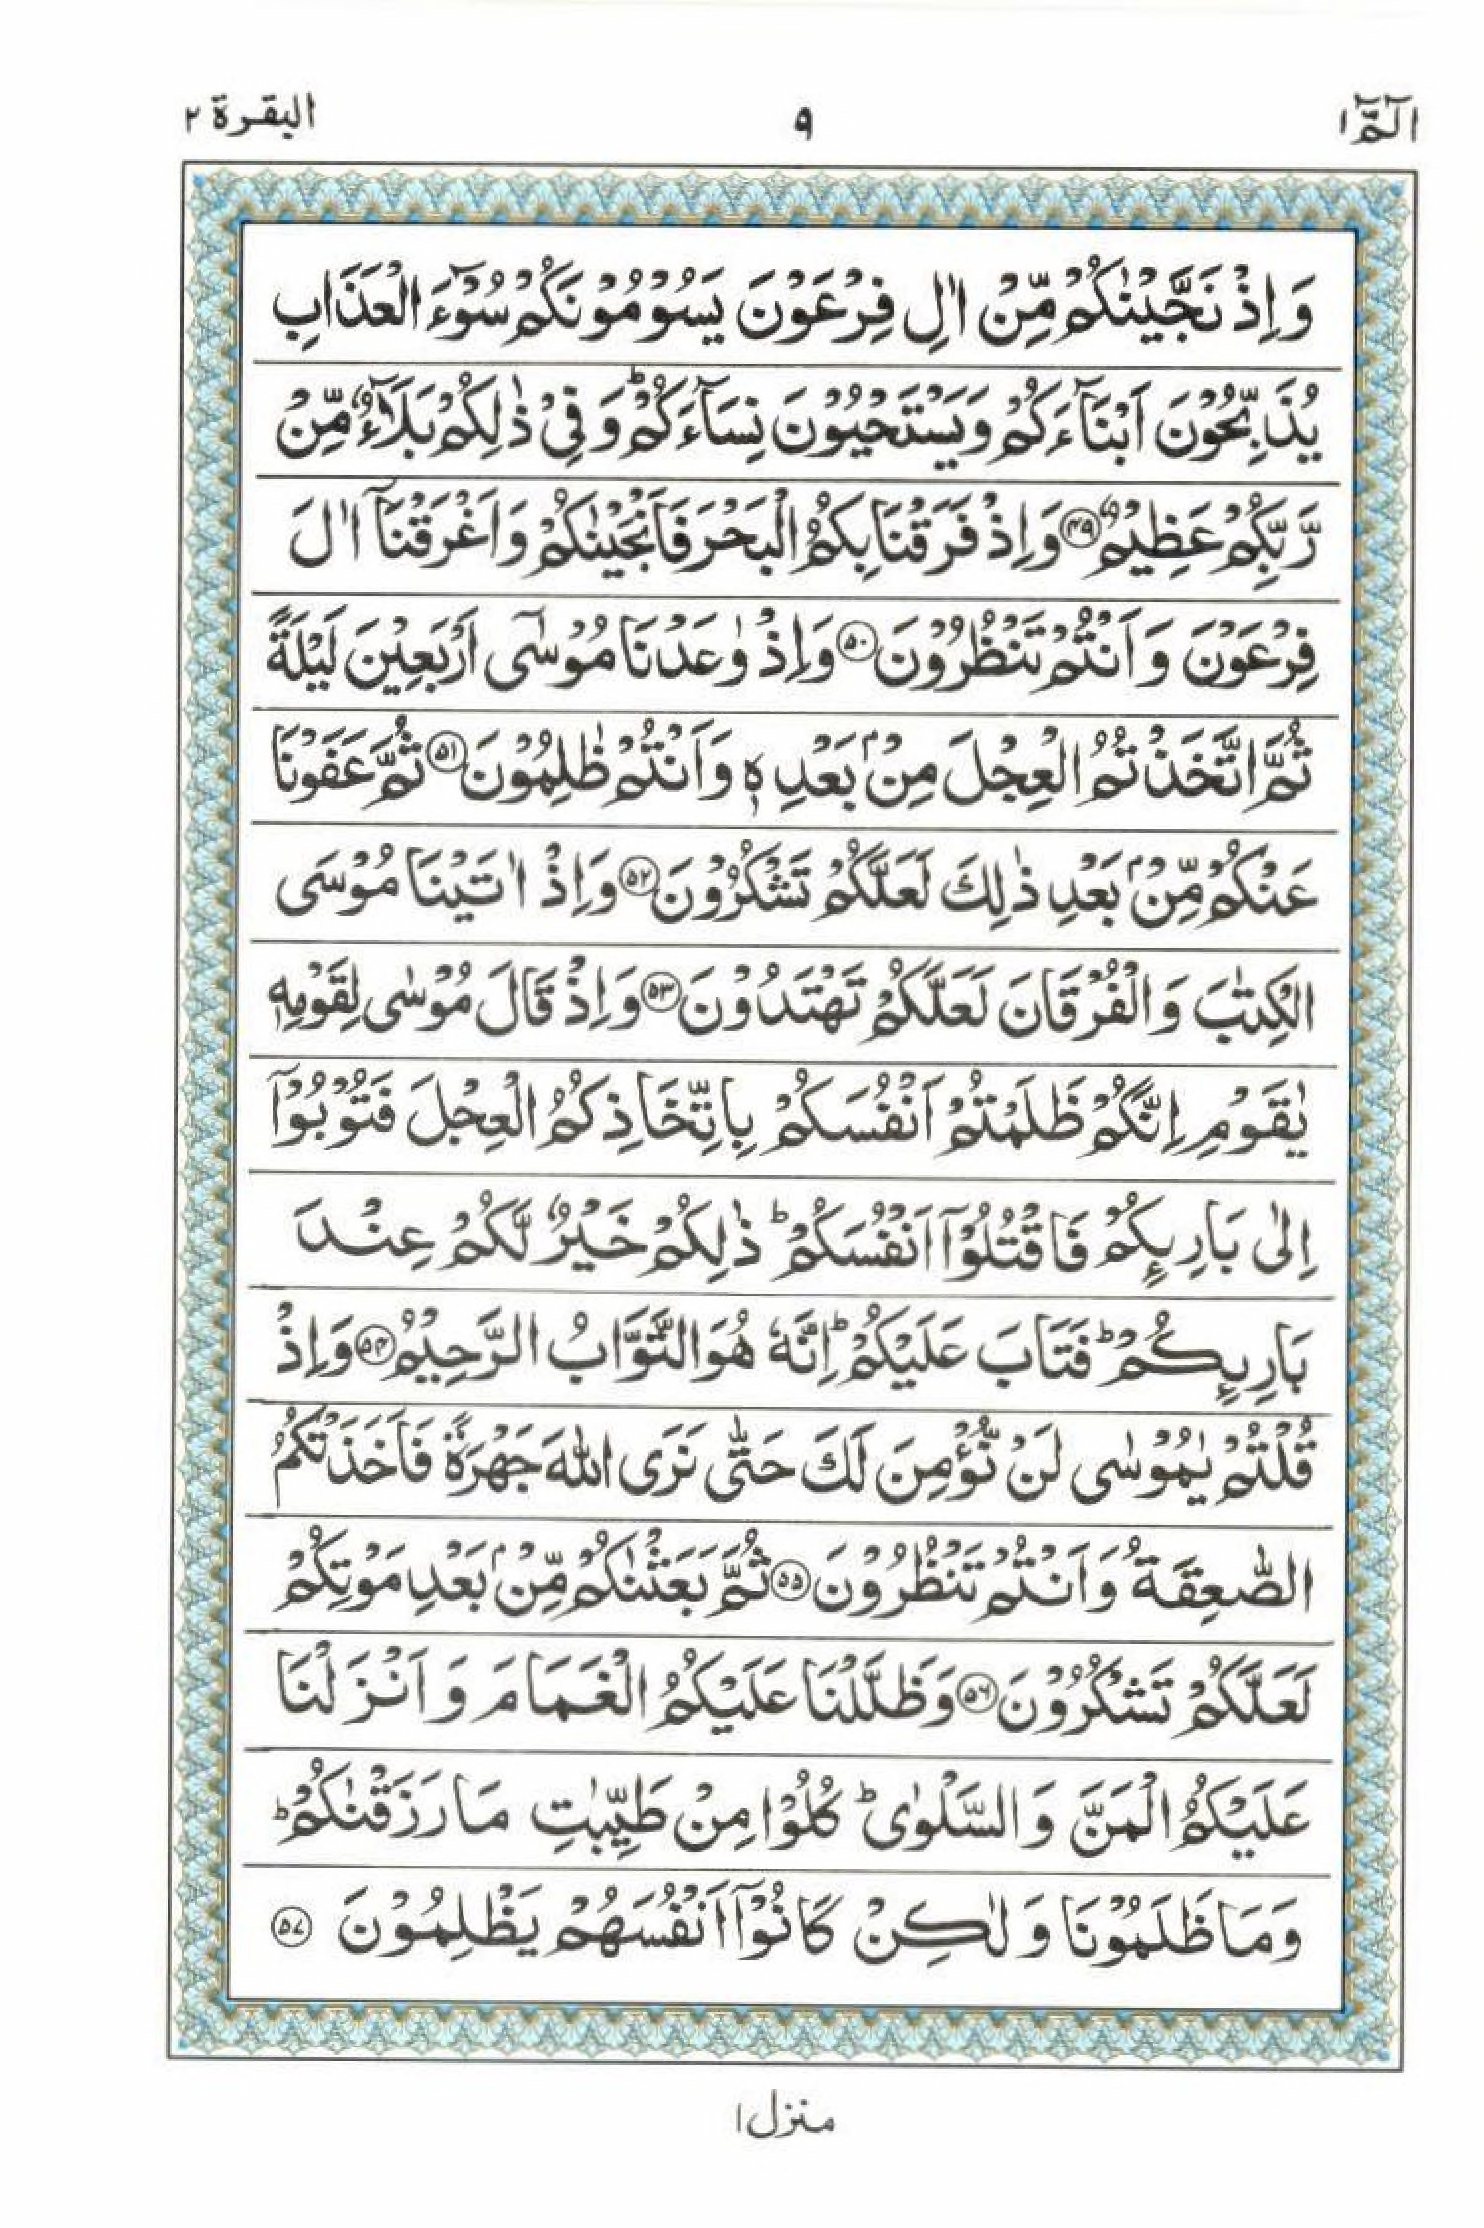 Read 15 Lines Al Quran Part 1 Page No 9, Practice Quran